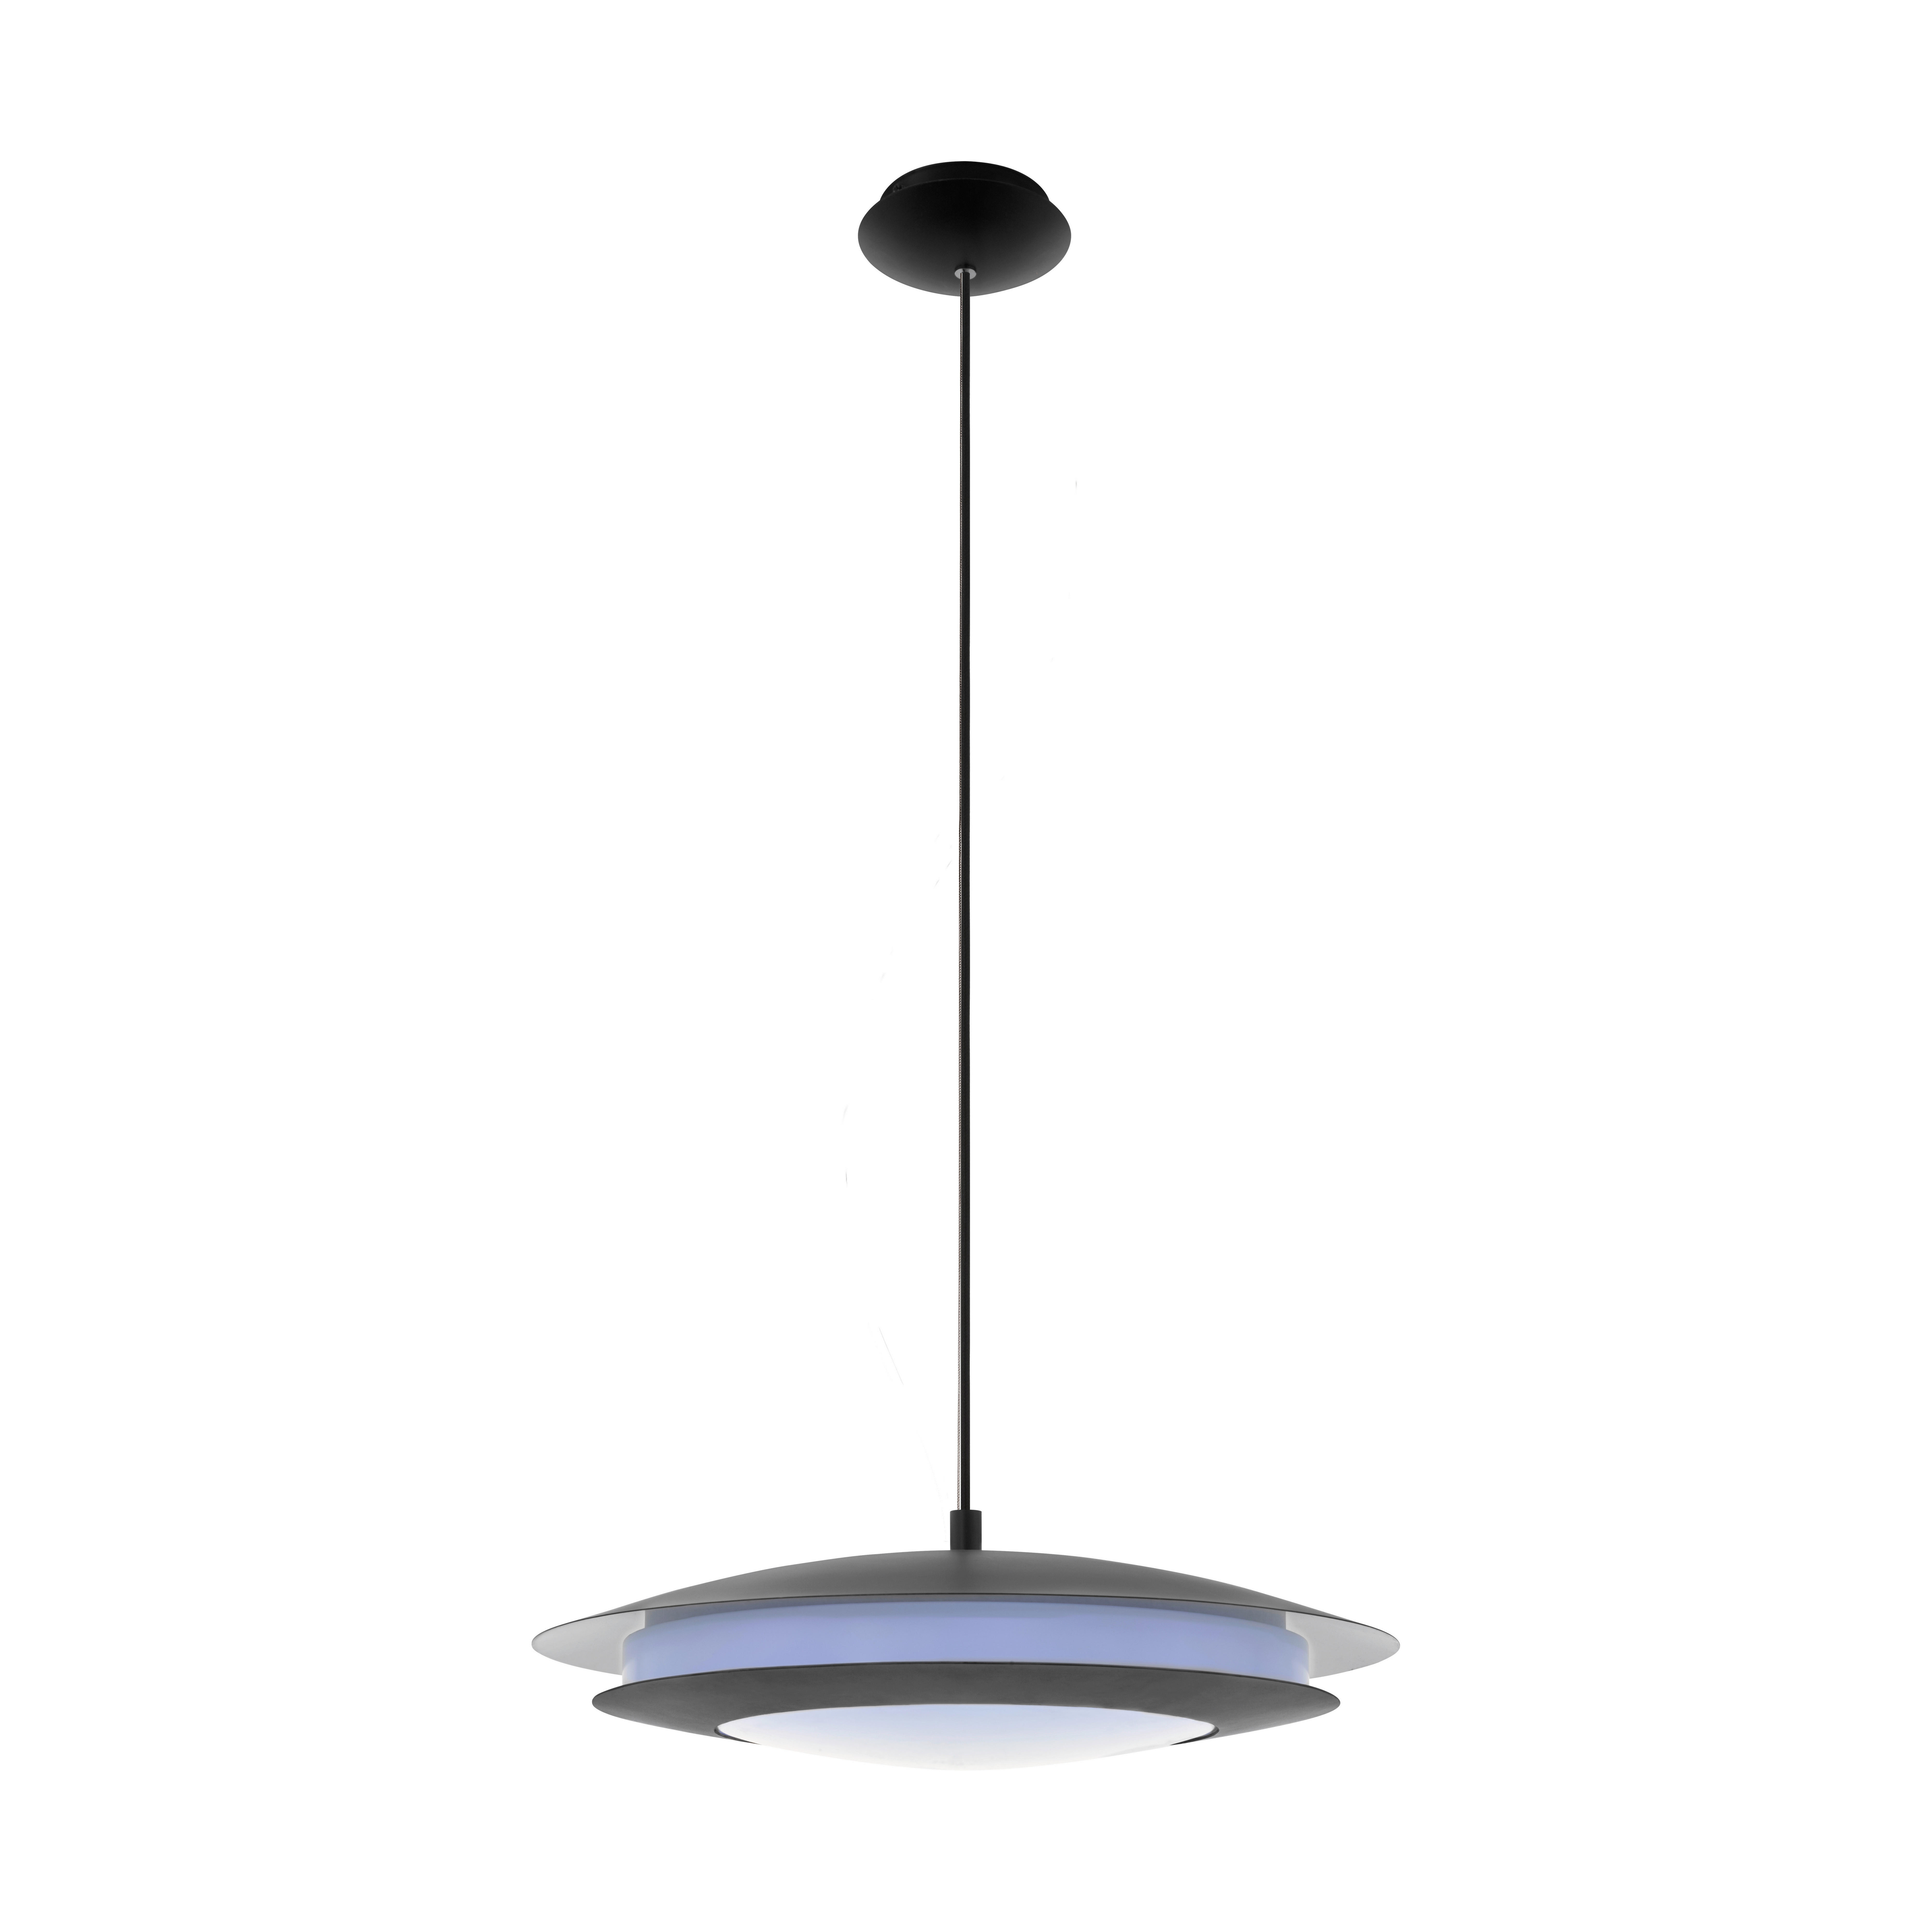 LED-HÄNGELEUCHTE MONEVA-CONNECT  - Schwarz/Weiß, Design, Kunststoff/Metall (48,5/150cm)